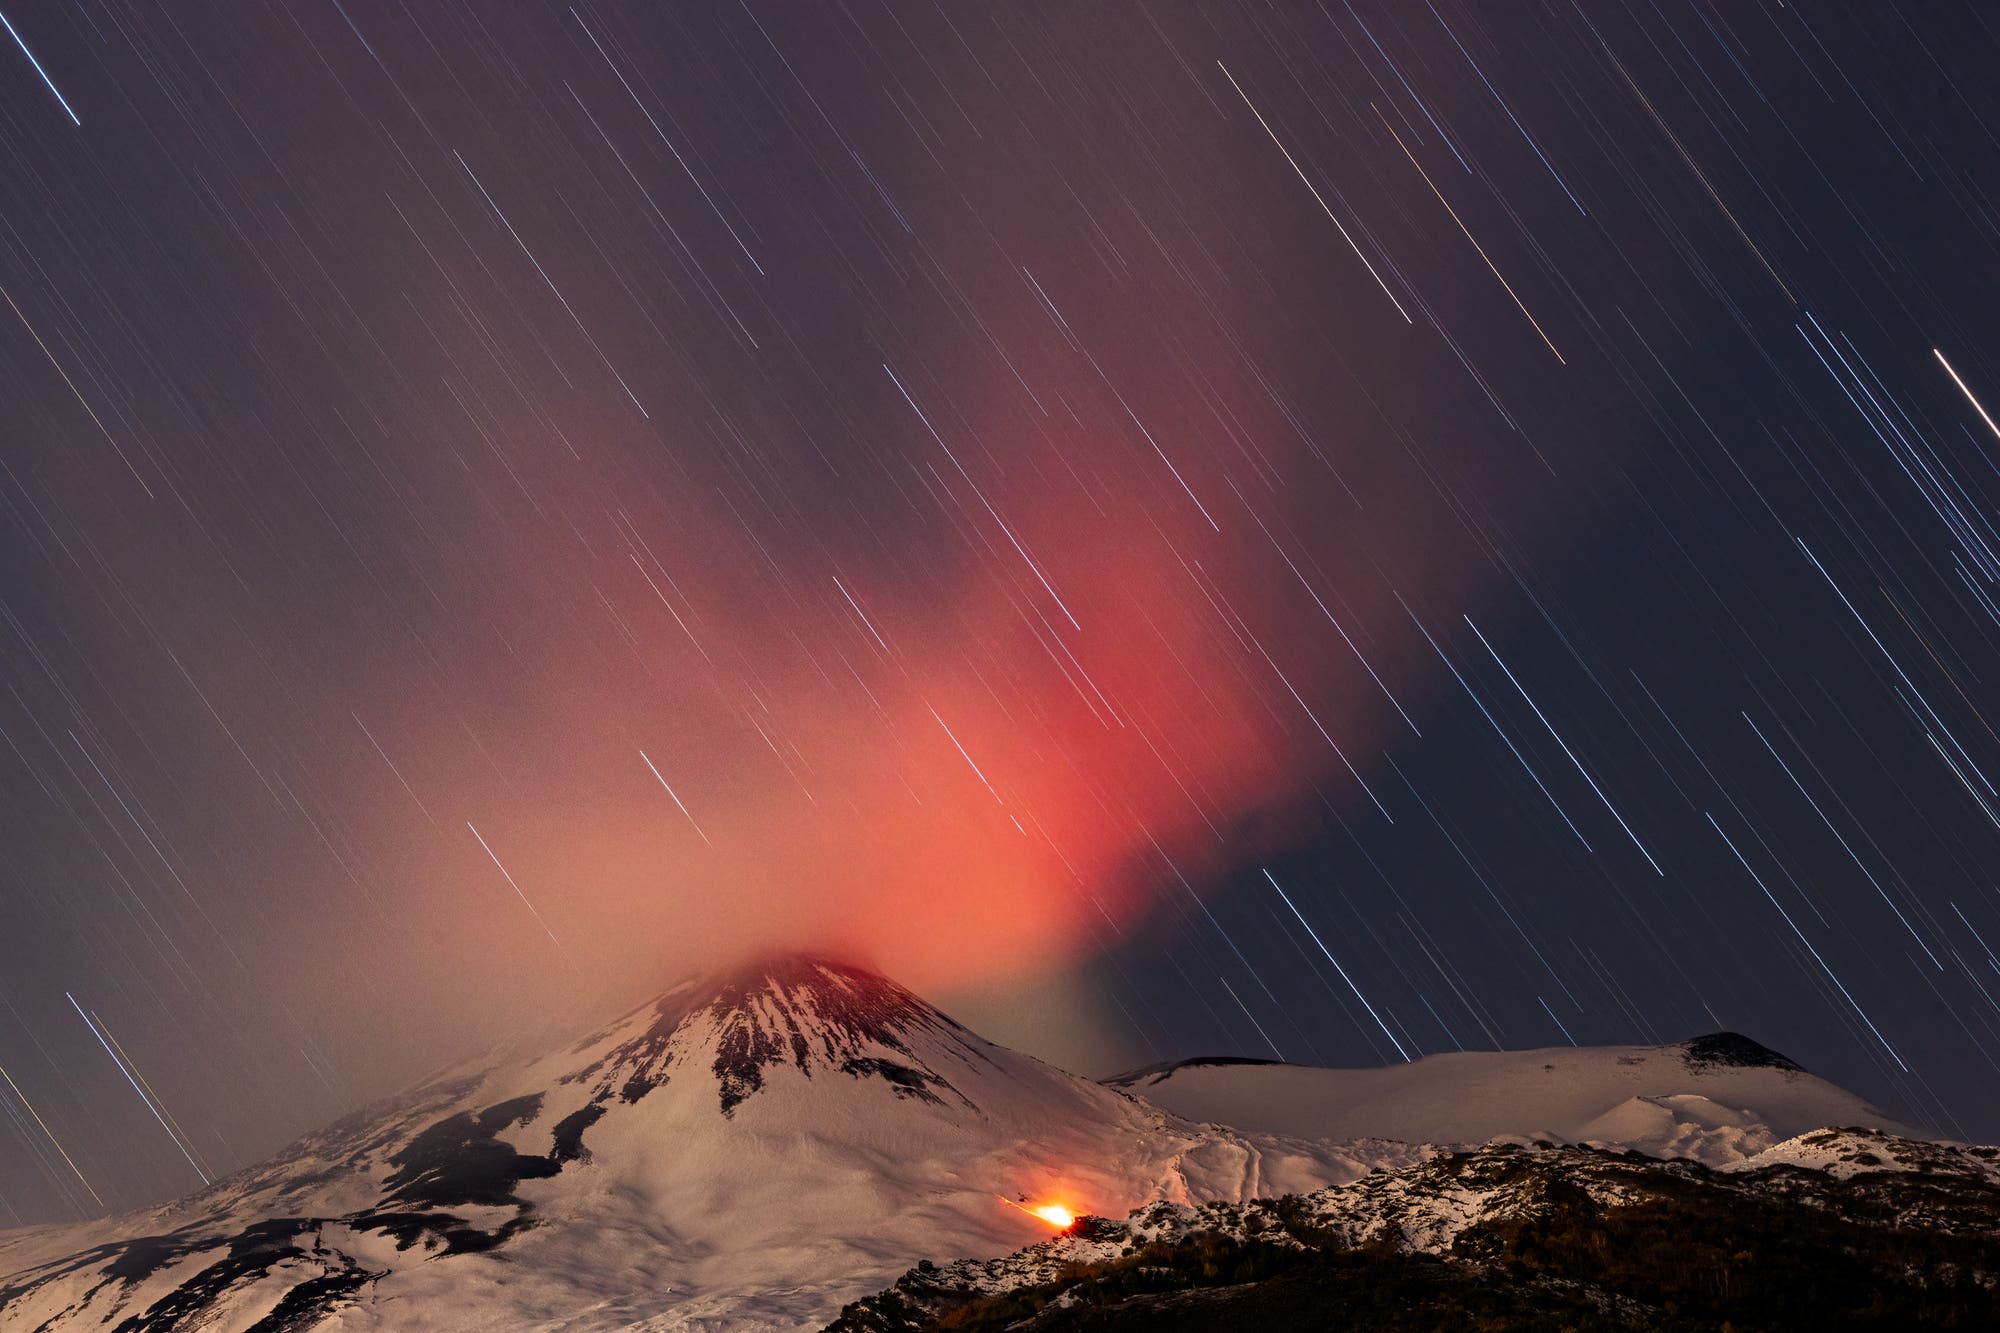 Star trails over mount Etna